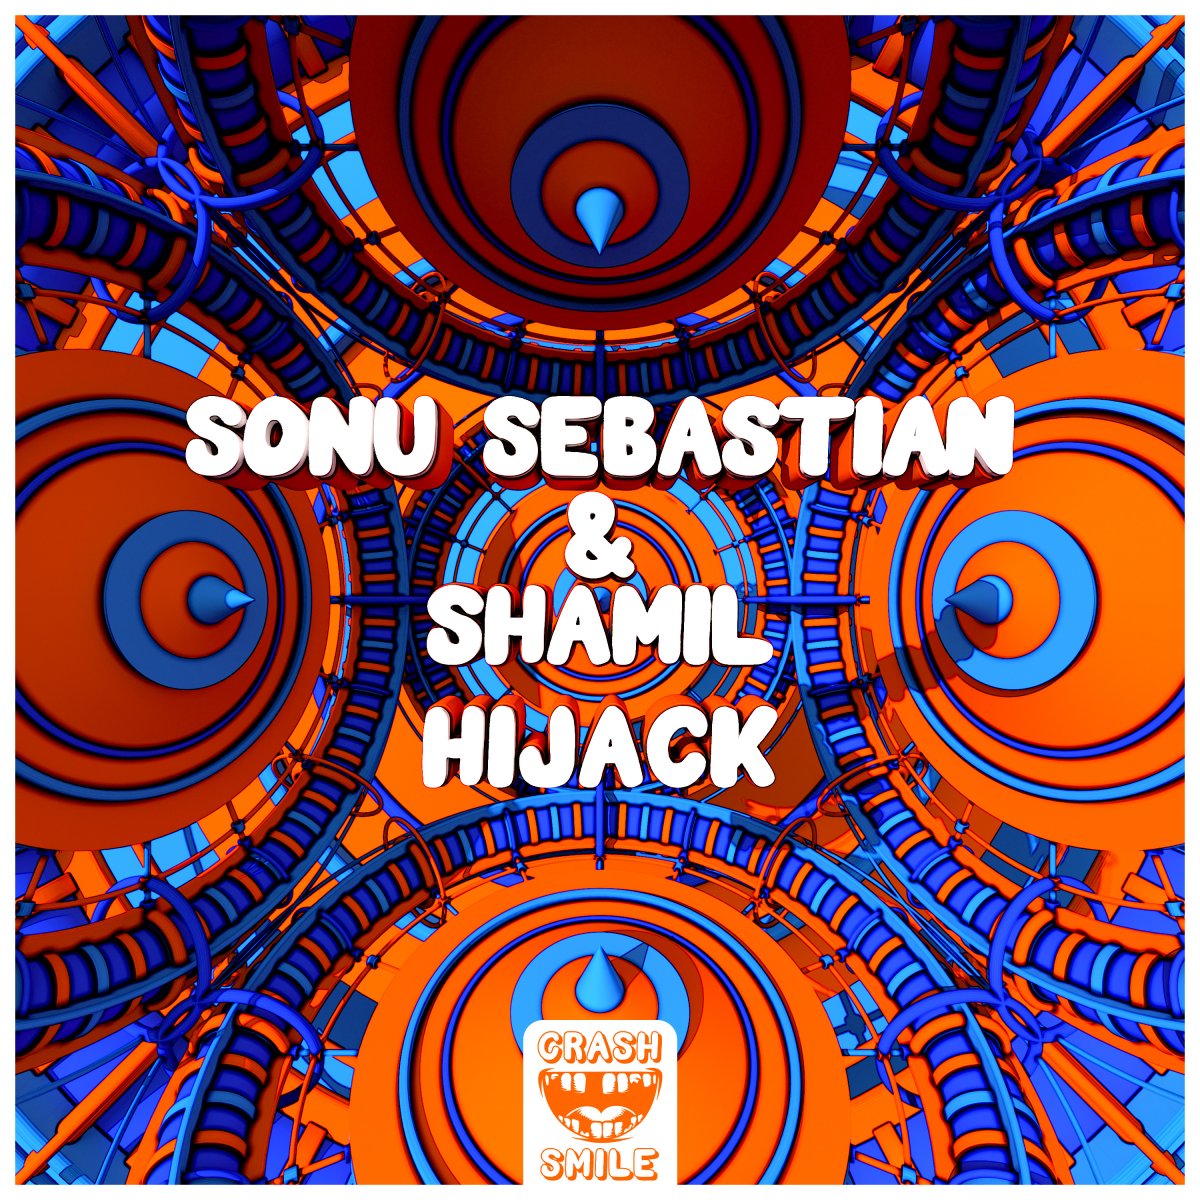 HIJACK - Sonu Sebastian⁠⁠ & Shamil⁠ 